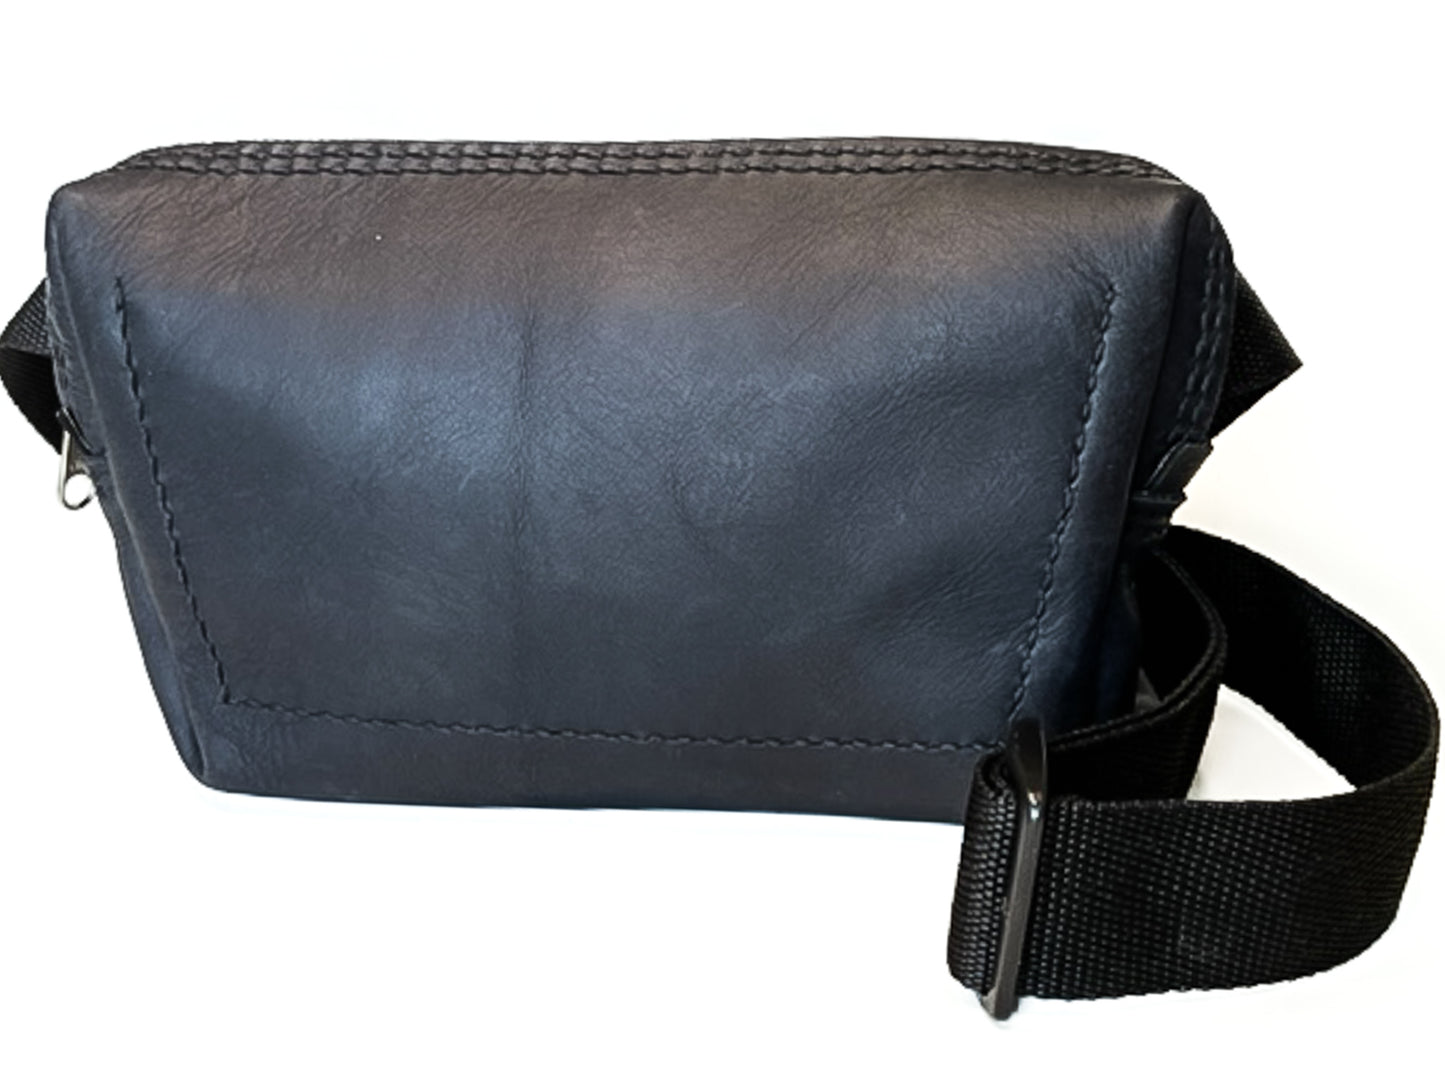 Sanna Leather Wellwood cross-body chest bag